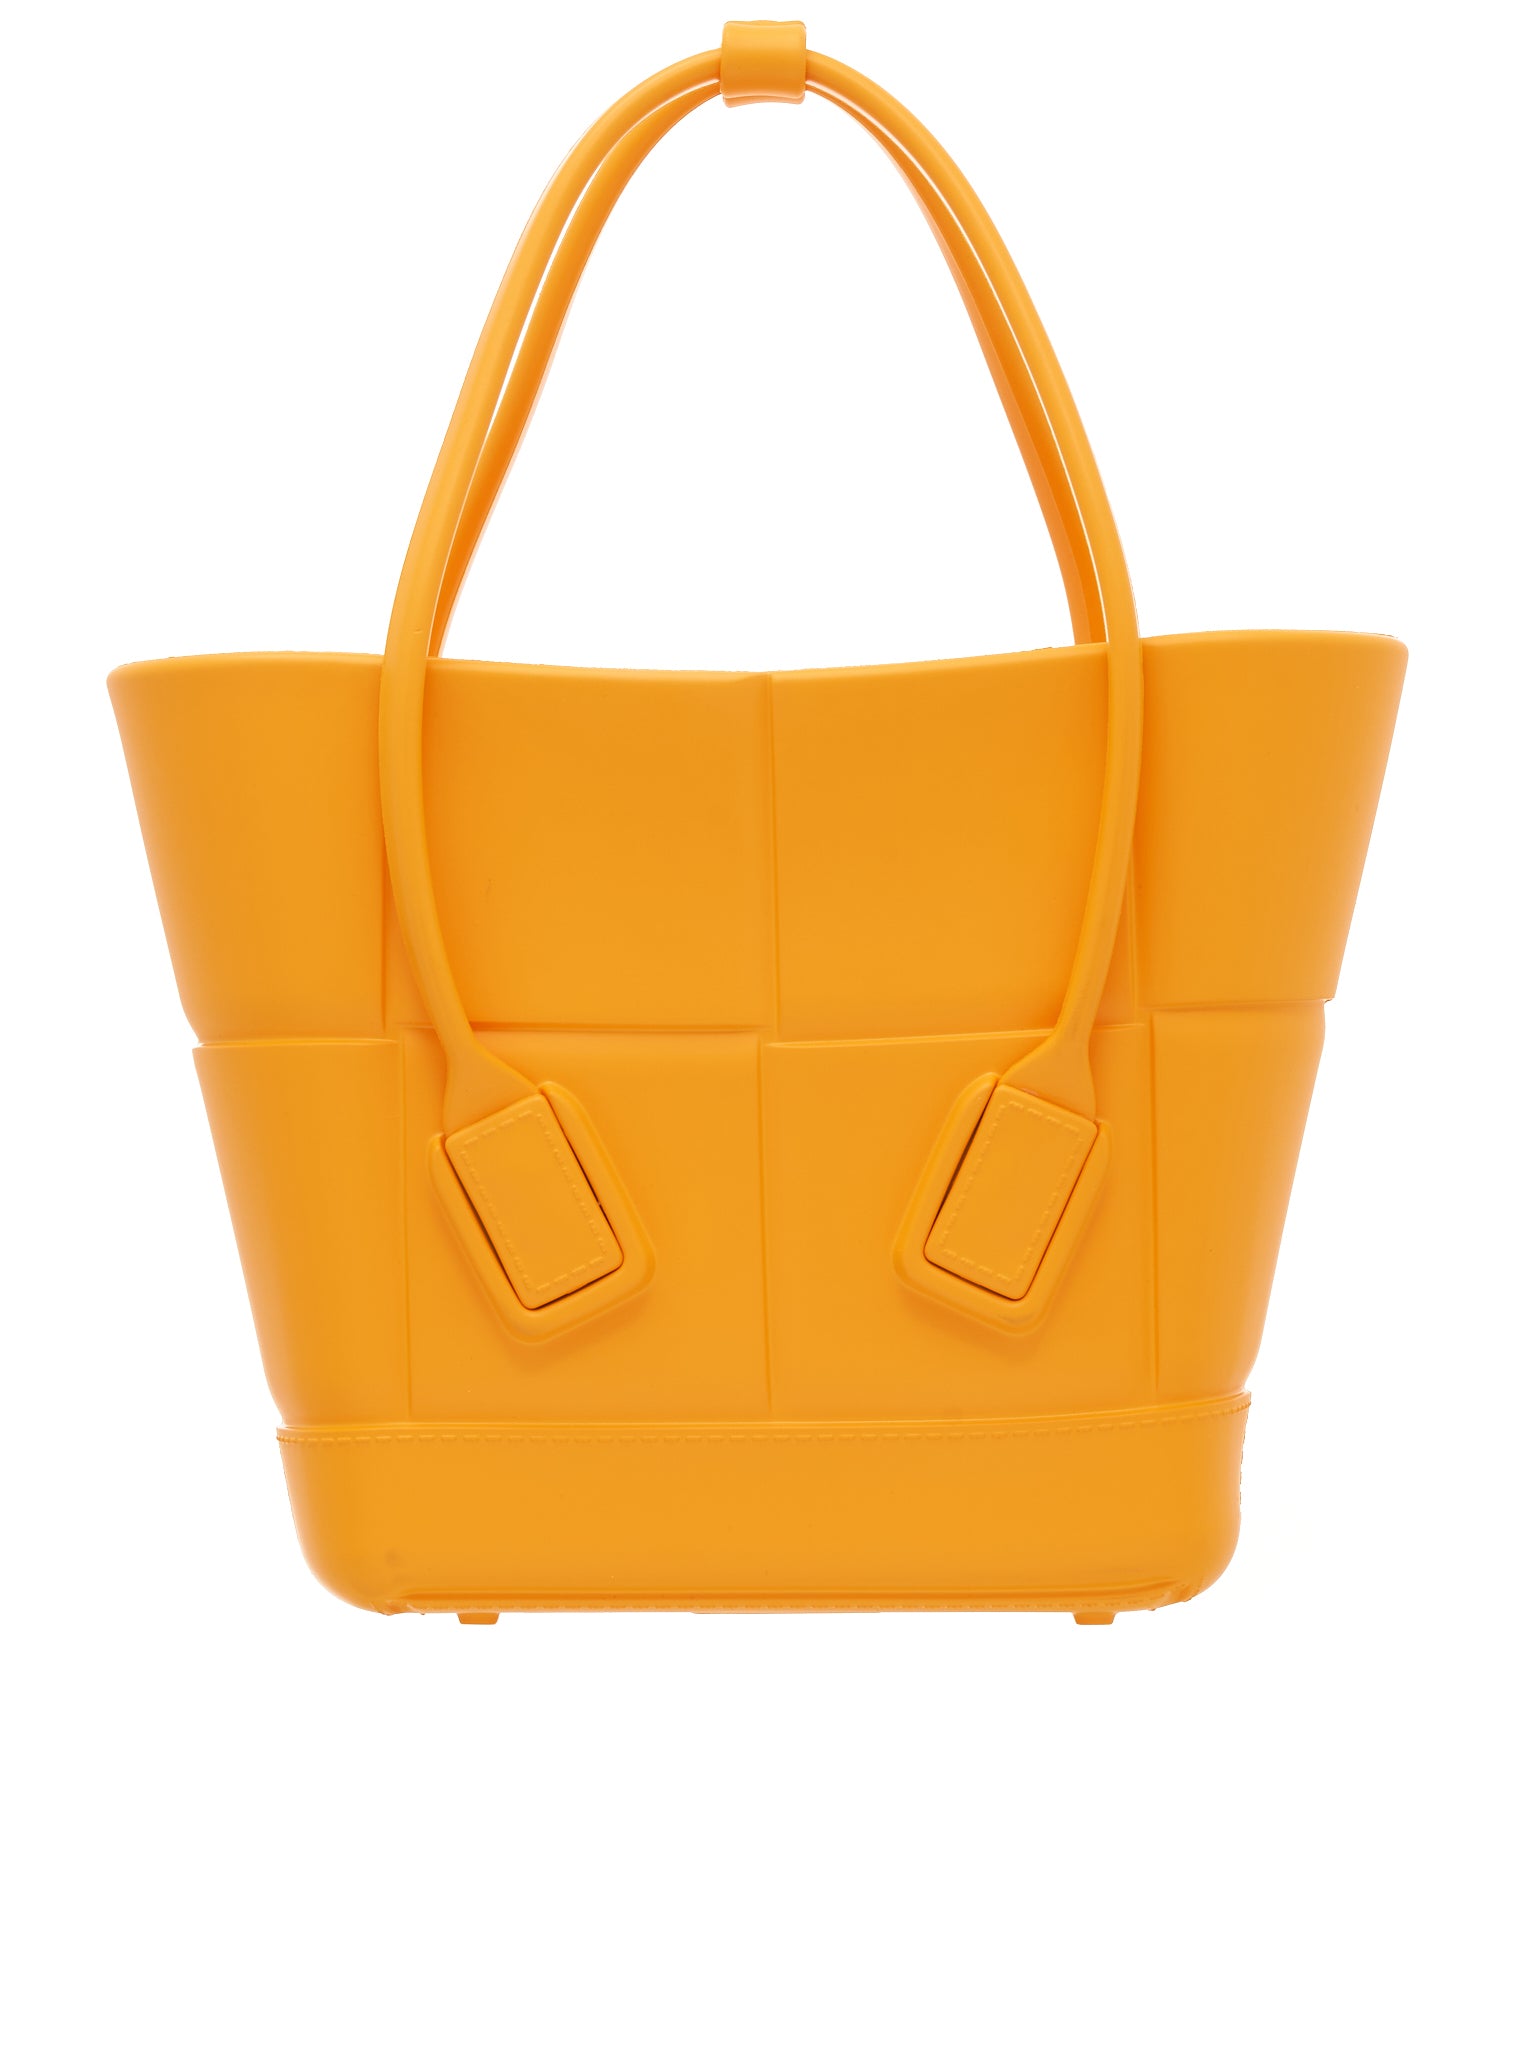 Buy VAN HEUSEN Women Yellow Handbag Yellow Online @ Best Price in India |  Flipkart.com